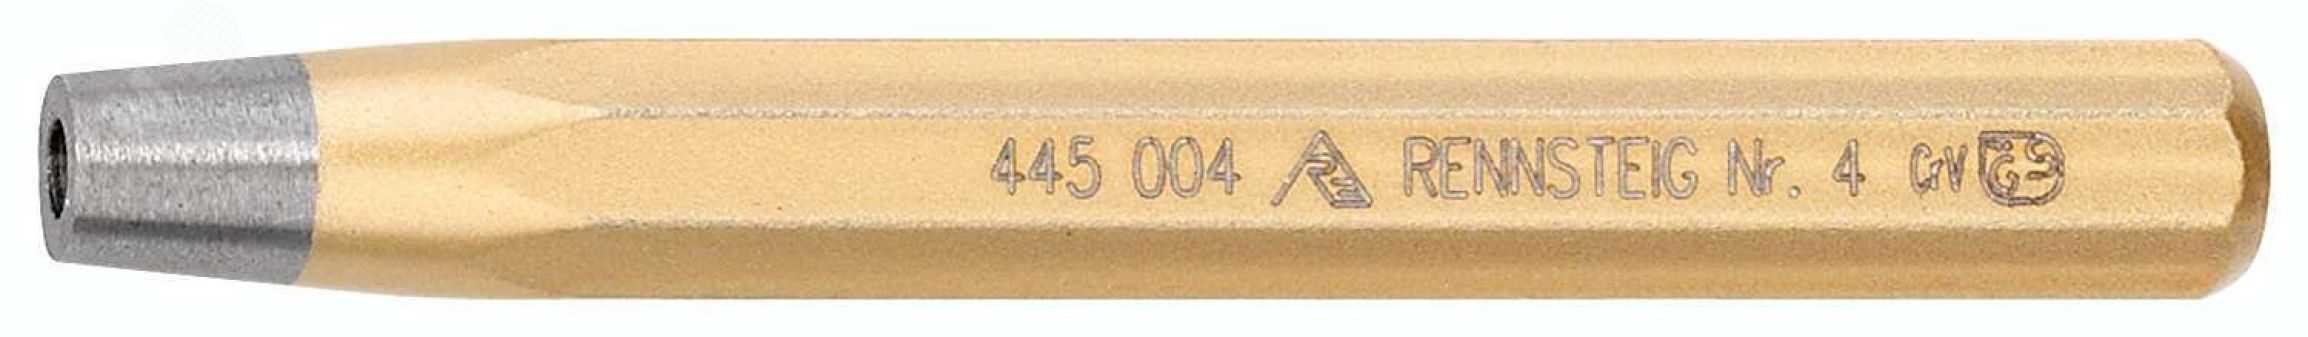 Натяжка для заклепок DIN 6434, заклепка 9 мм, отв. 10 мм, 16 x 120 мм, 8-гранный профиль, для сжатия ( осадки) листов перед клепкой RE-4450090 RENNSTEIG